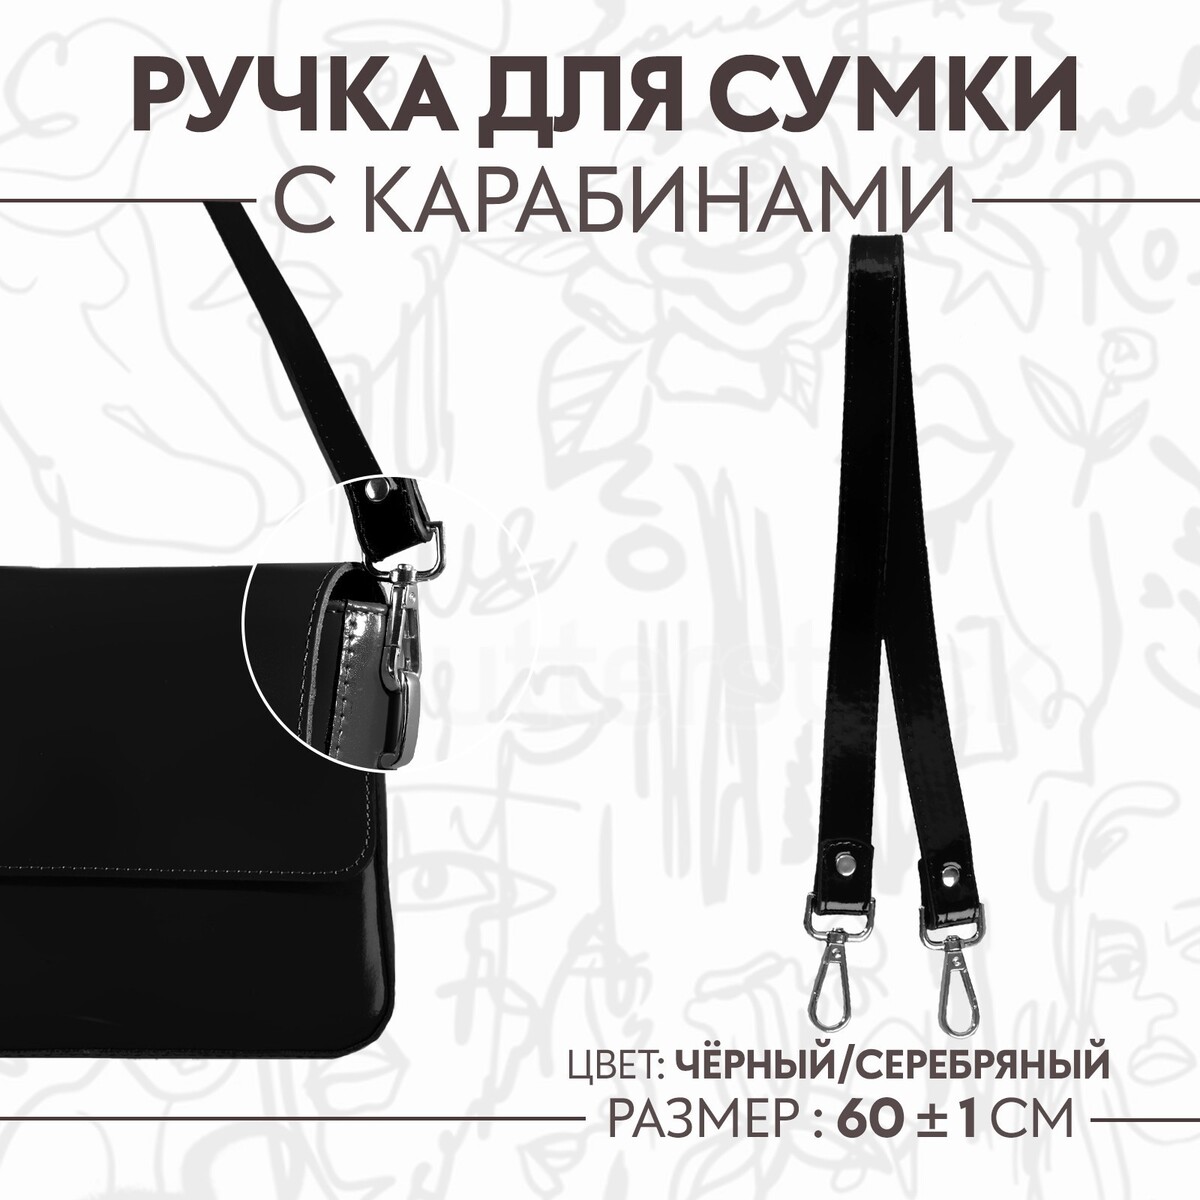 Ручка для сумки лакированная, с карабинами, 60 ± 1 см, цвет черный ручка для сумки с карабинами 60 ± 1 см × 2 см серый